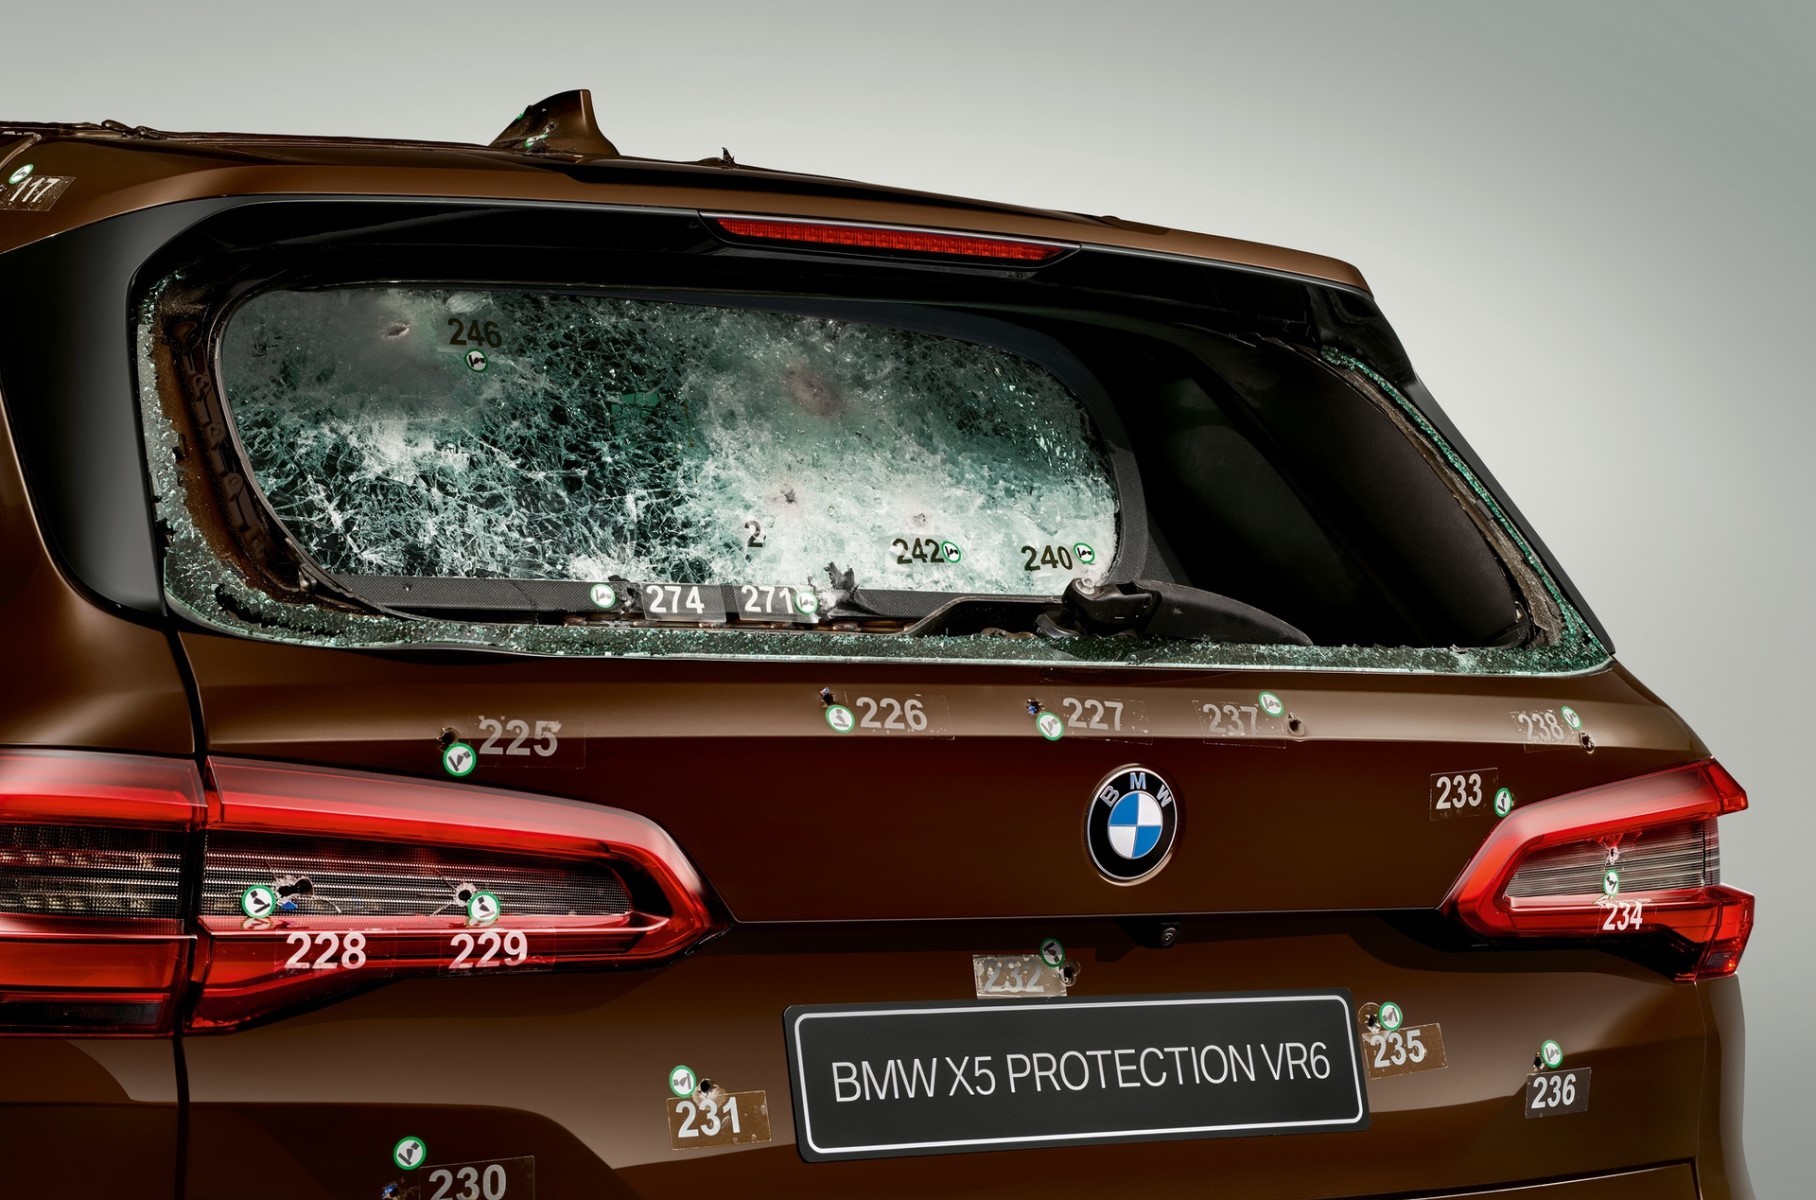 Посмотрите, как выглядит бронированный BMW X5 после обстрела bmw,Марки и модели